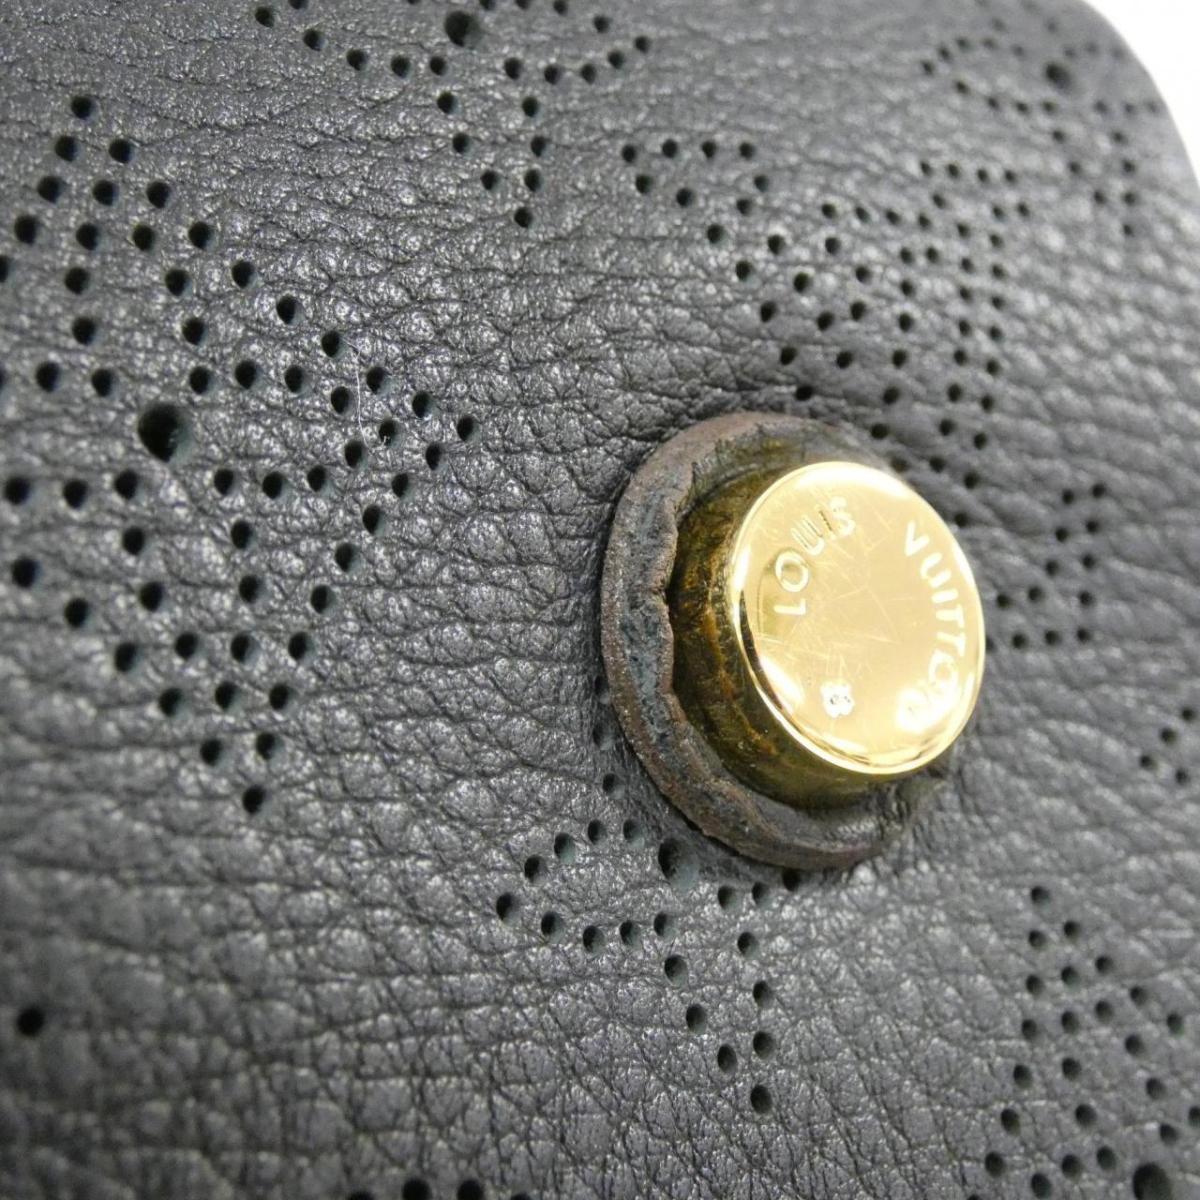 Louis Vuitton Makhina PM M93465 Bag